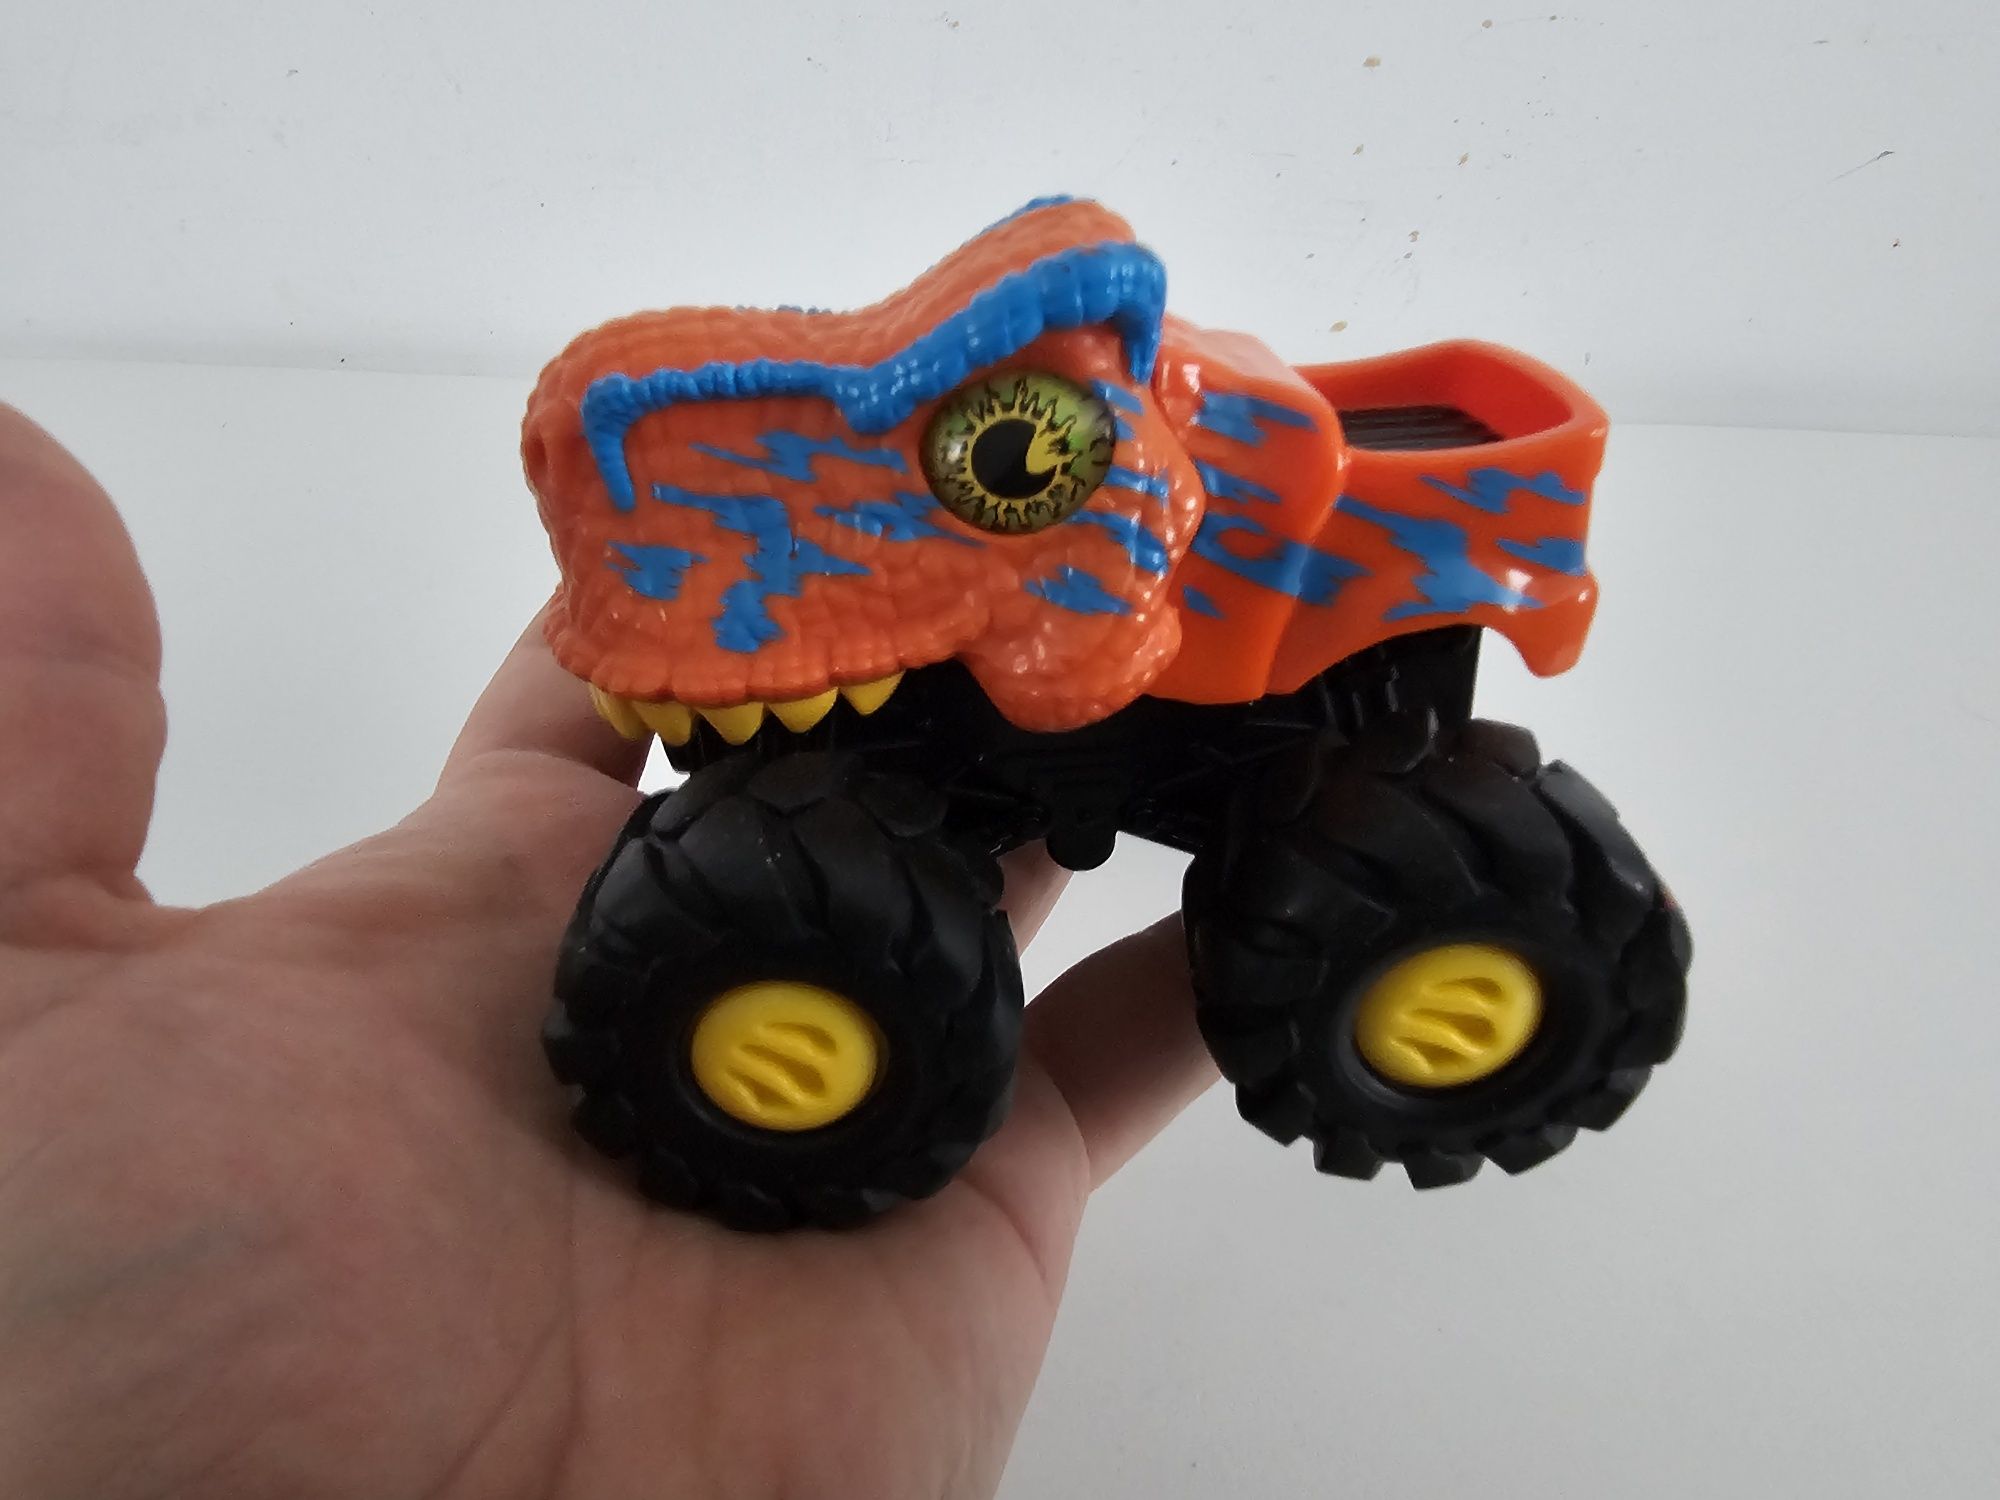 Monster truck samochód terenowy dinozaur